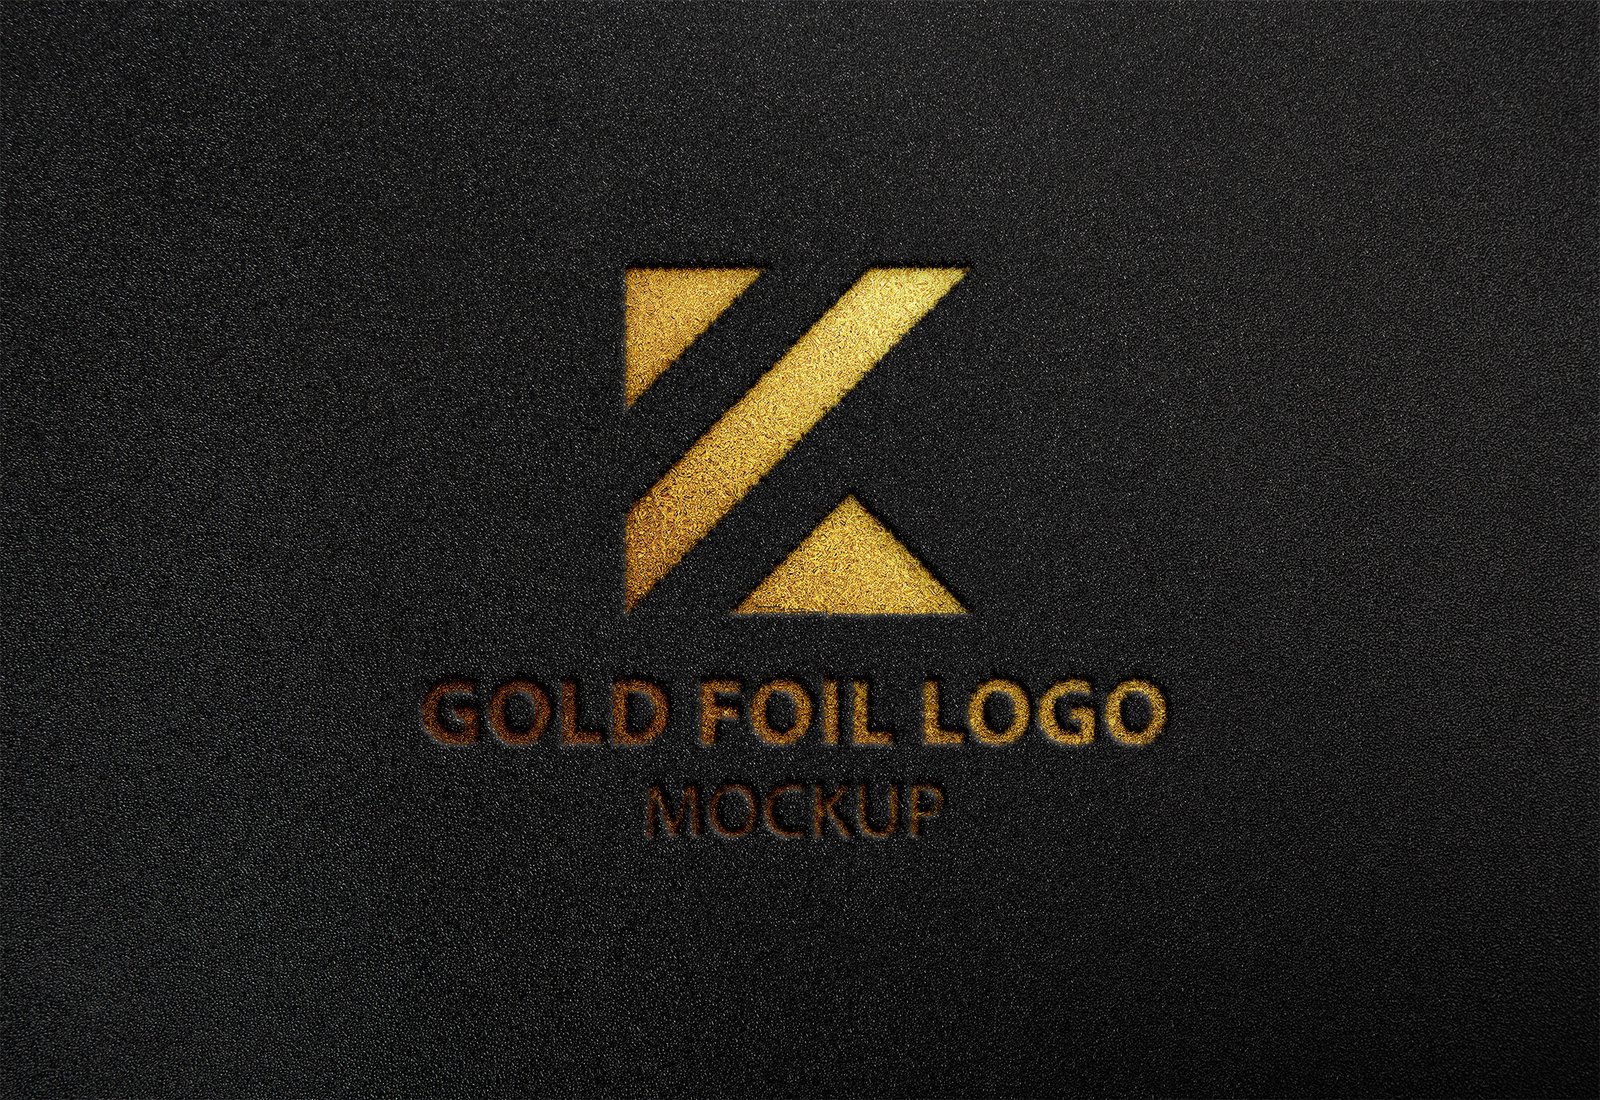 Download Free Gold Foil Logo Mockup Vol 2 PSD Template - Mockup Den